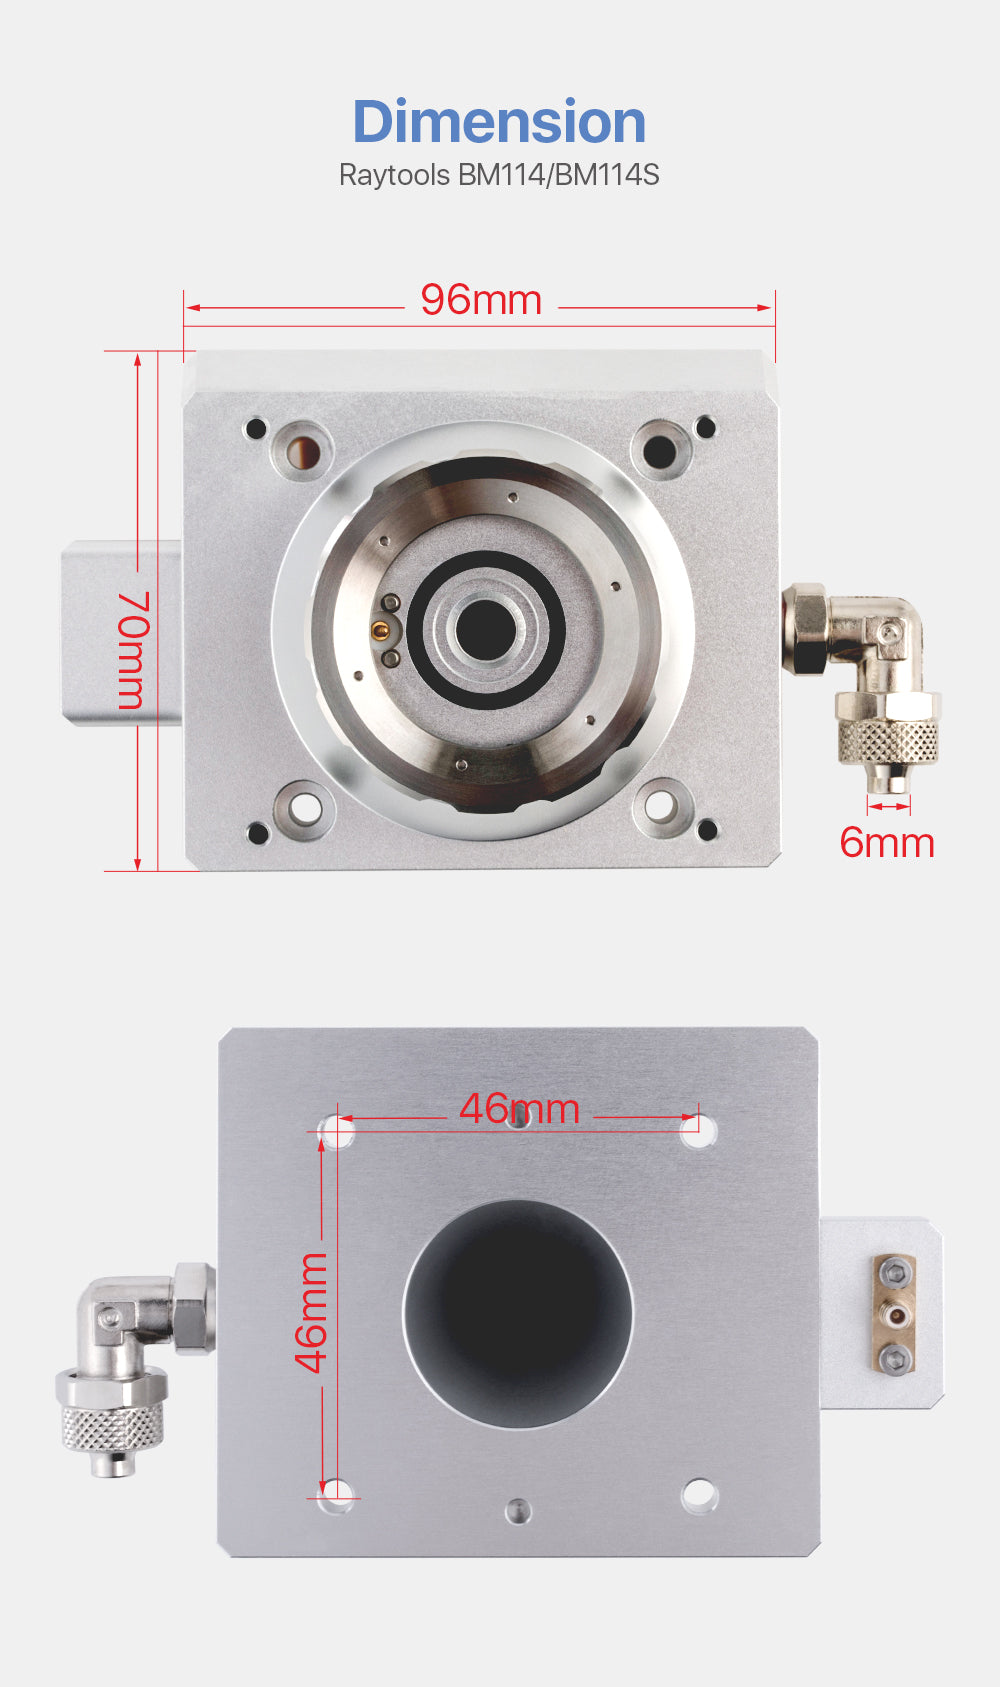 Original Nozzle Connector For Raytools BM114/BM114S Fiber Metal Cutting Head